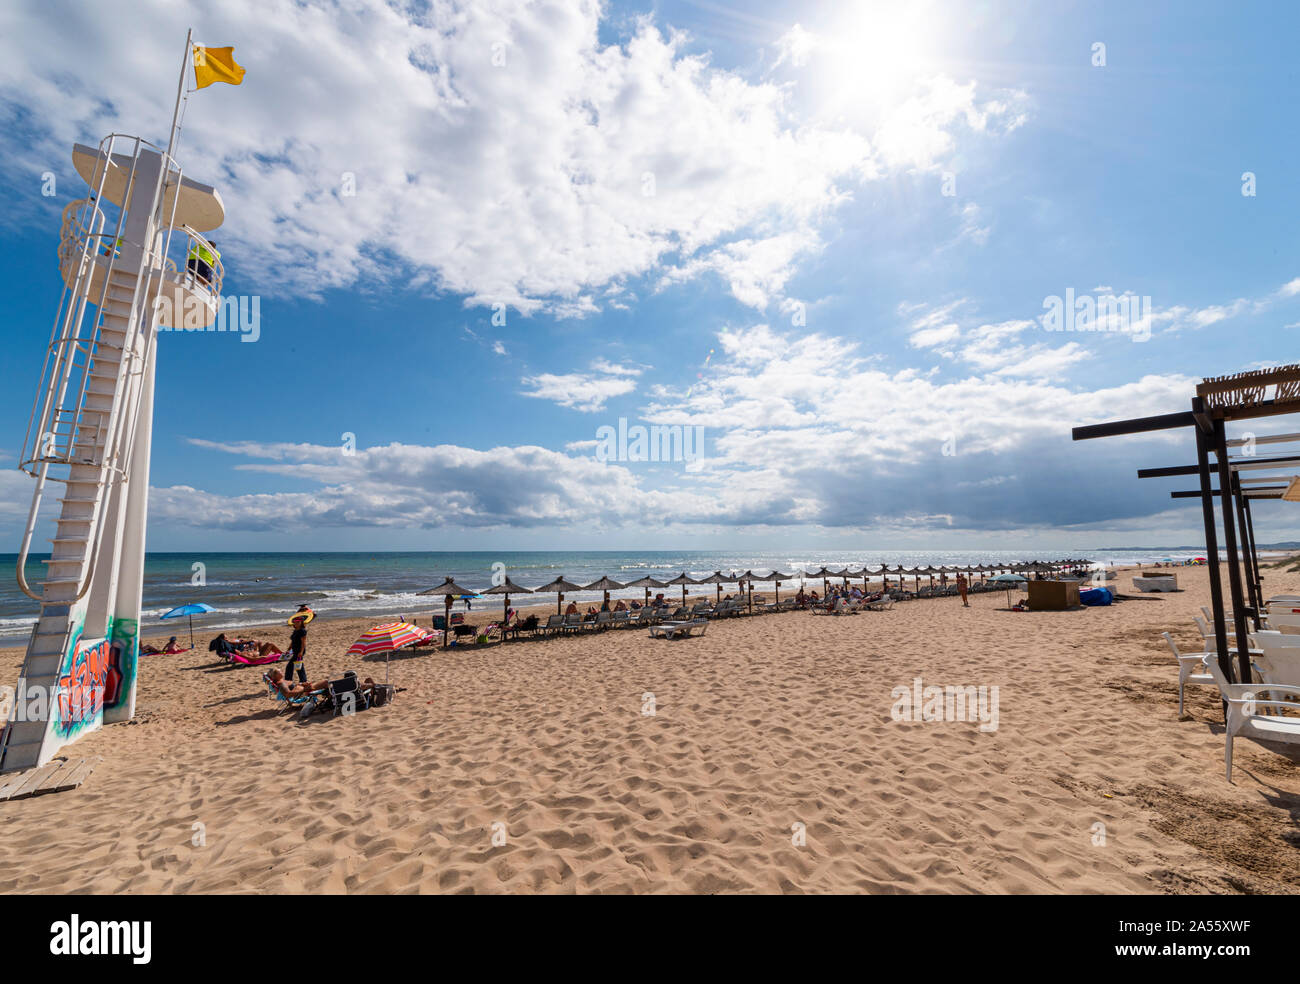 Zona de Playas La Marina village côtier administrés par la ville d'Elche, dans la province d'Alicante, sur la Costa Blanca espagnole par la Méditerranée. Banque D'Images